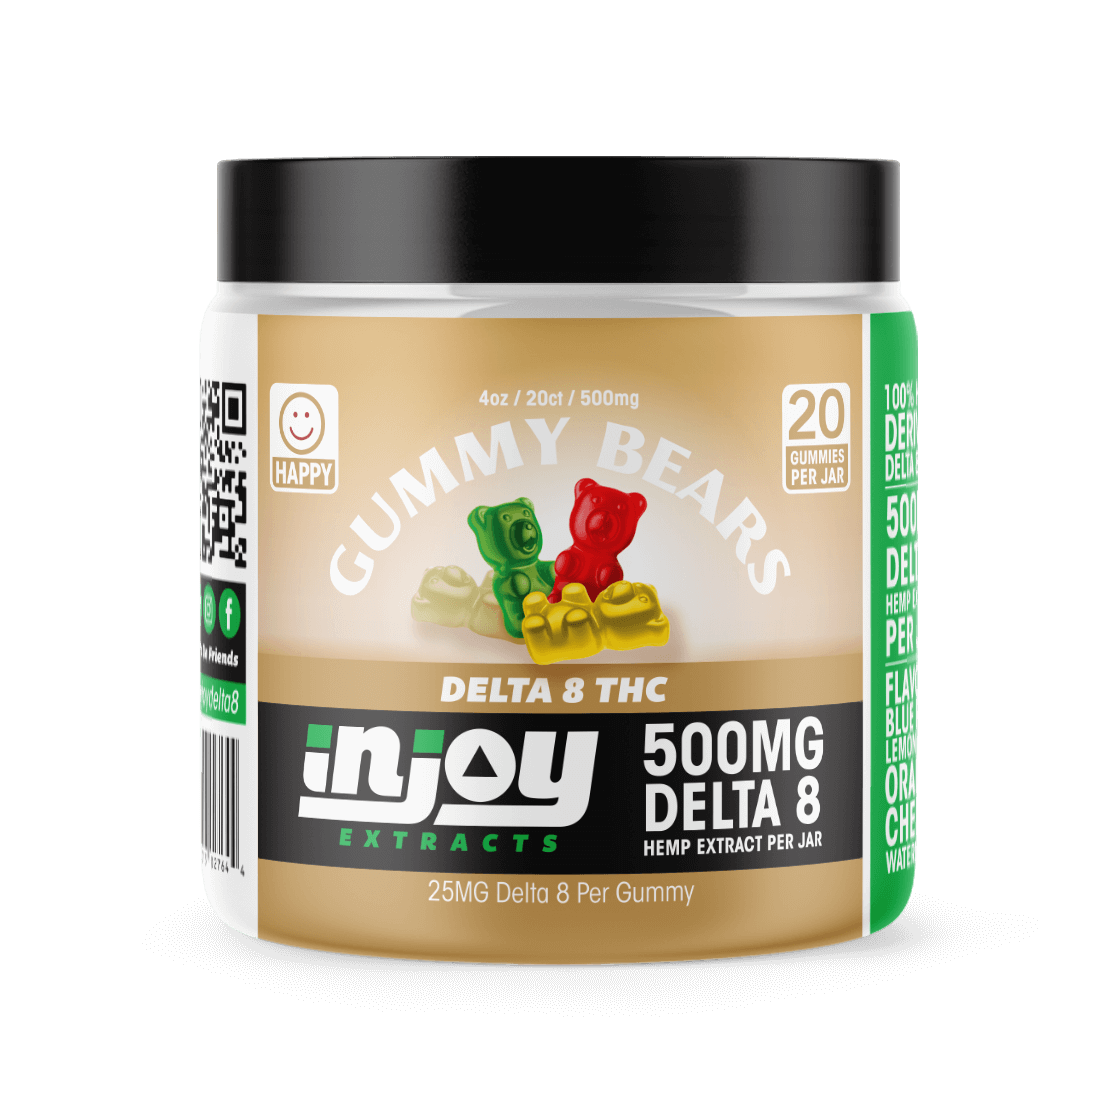 25mg Delta 8 Gummy Bears - Injoy Extracts